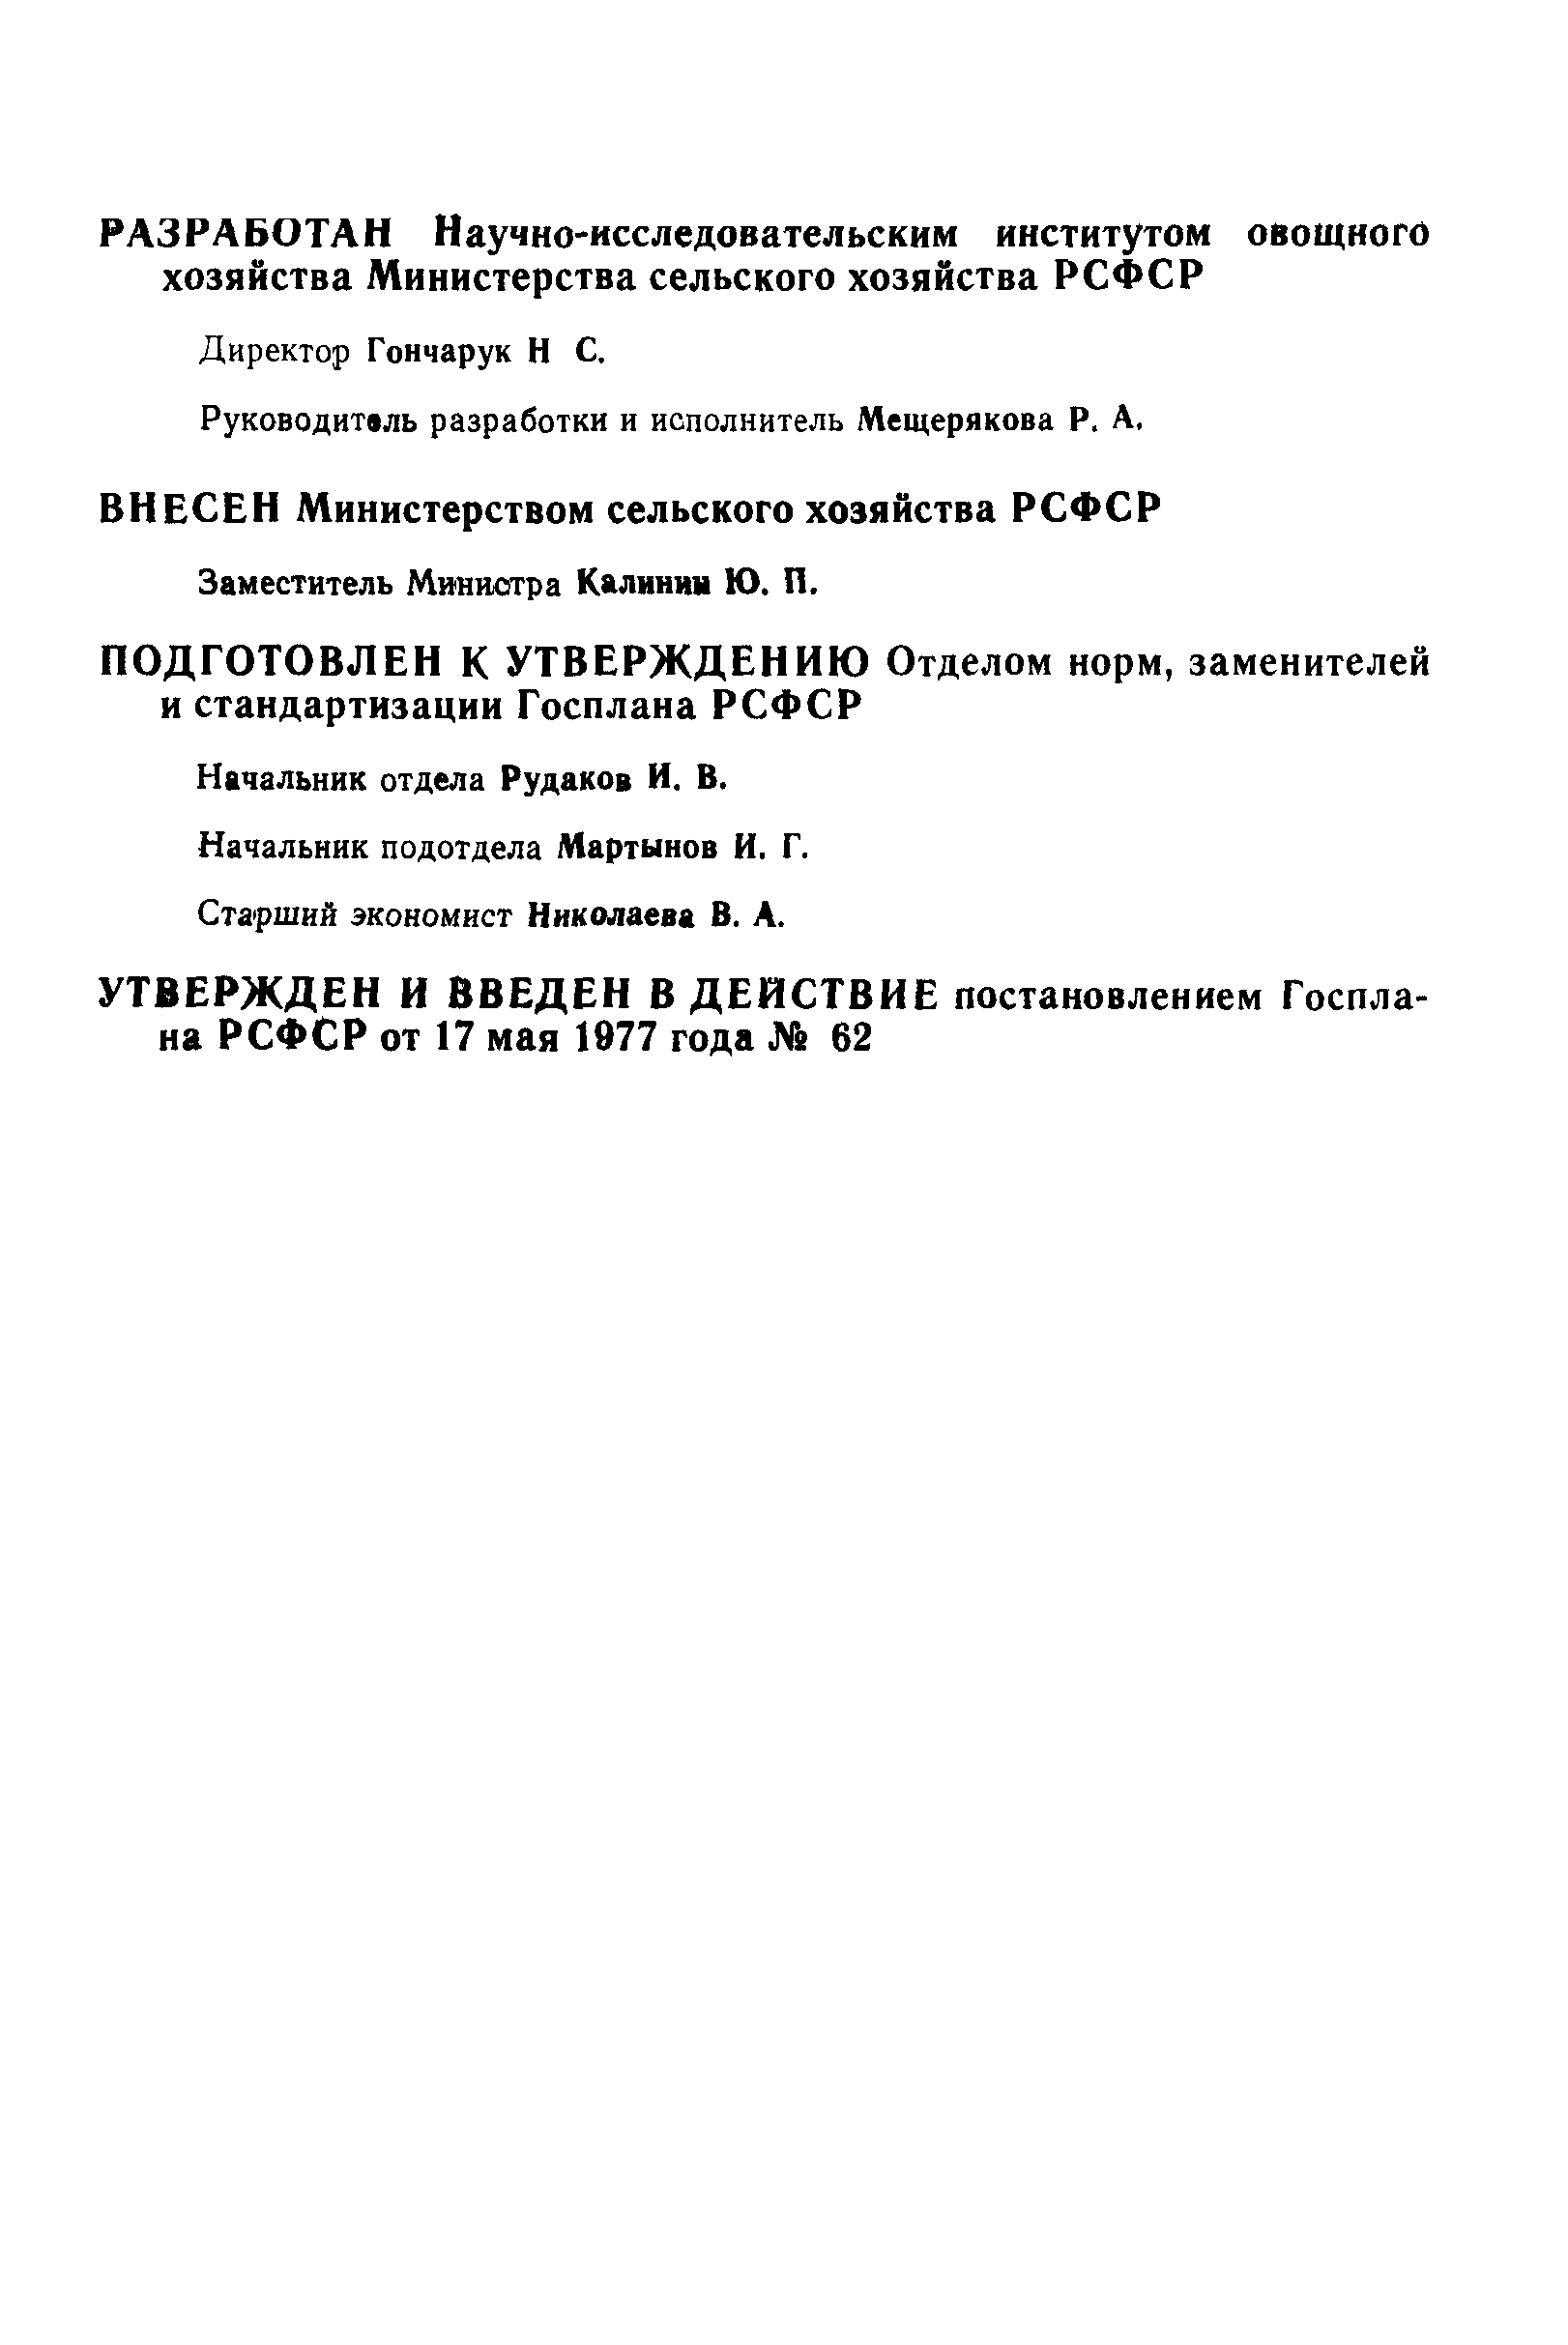 РСТ РСФСР 362-77